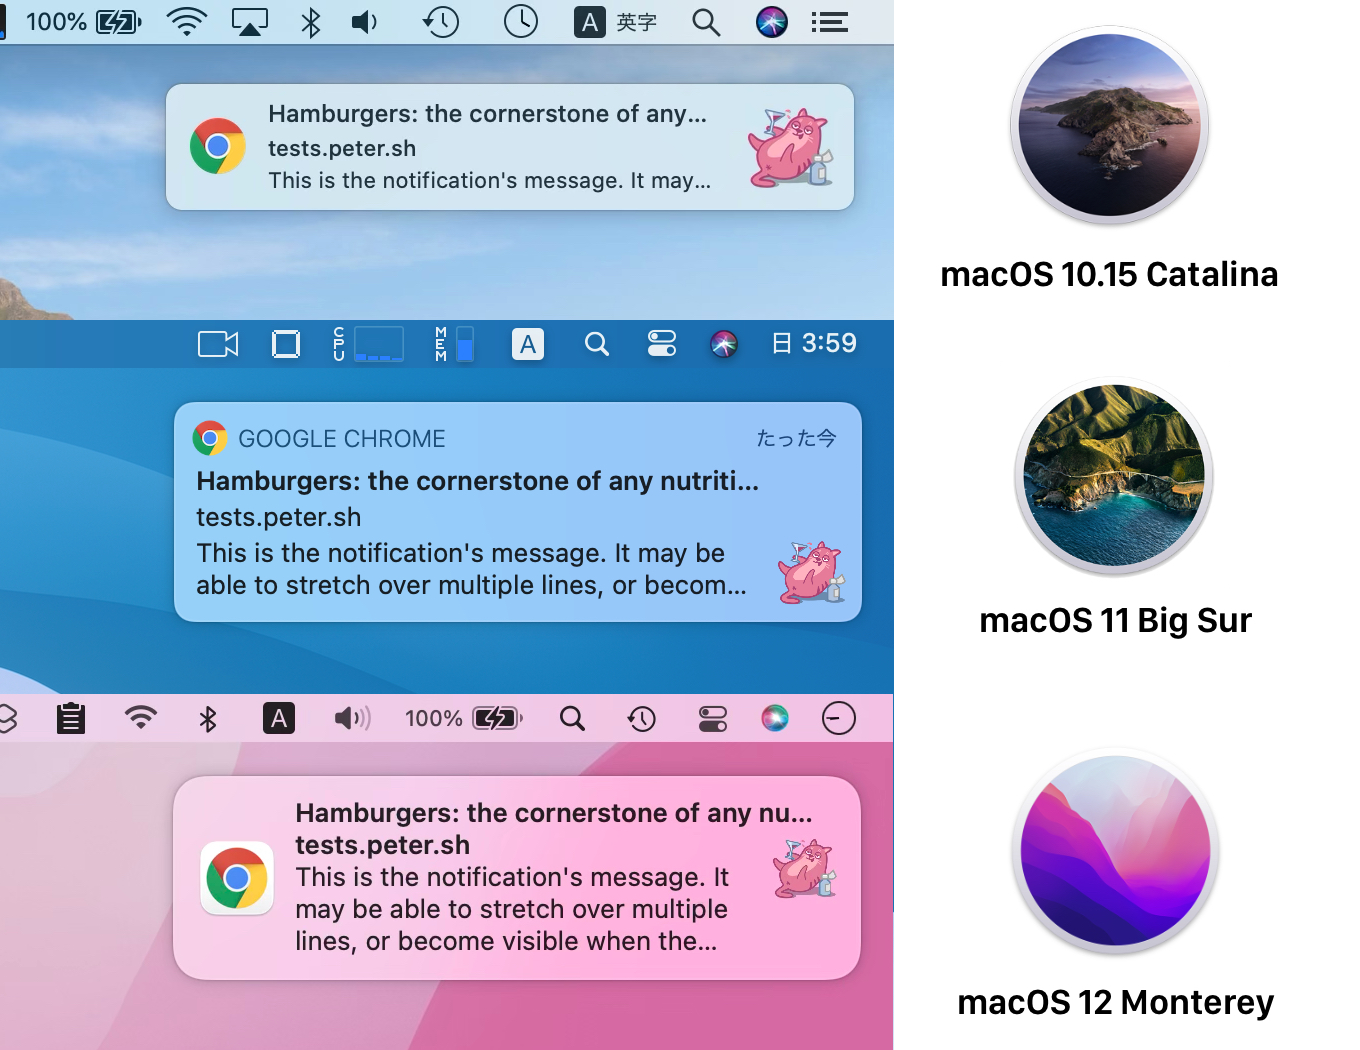 macOS 10.15 CatalinaとmacOS 11 Big Sur、macOS 12 Montereyの通知